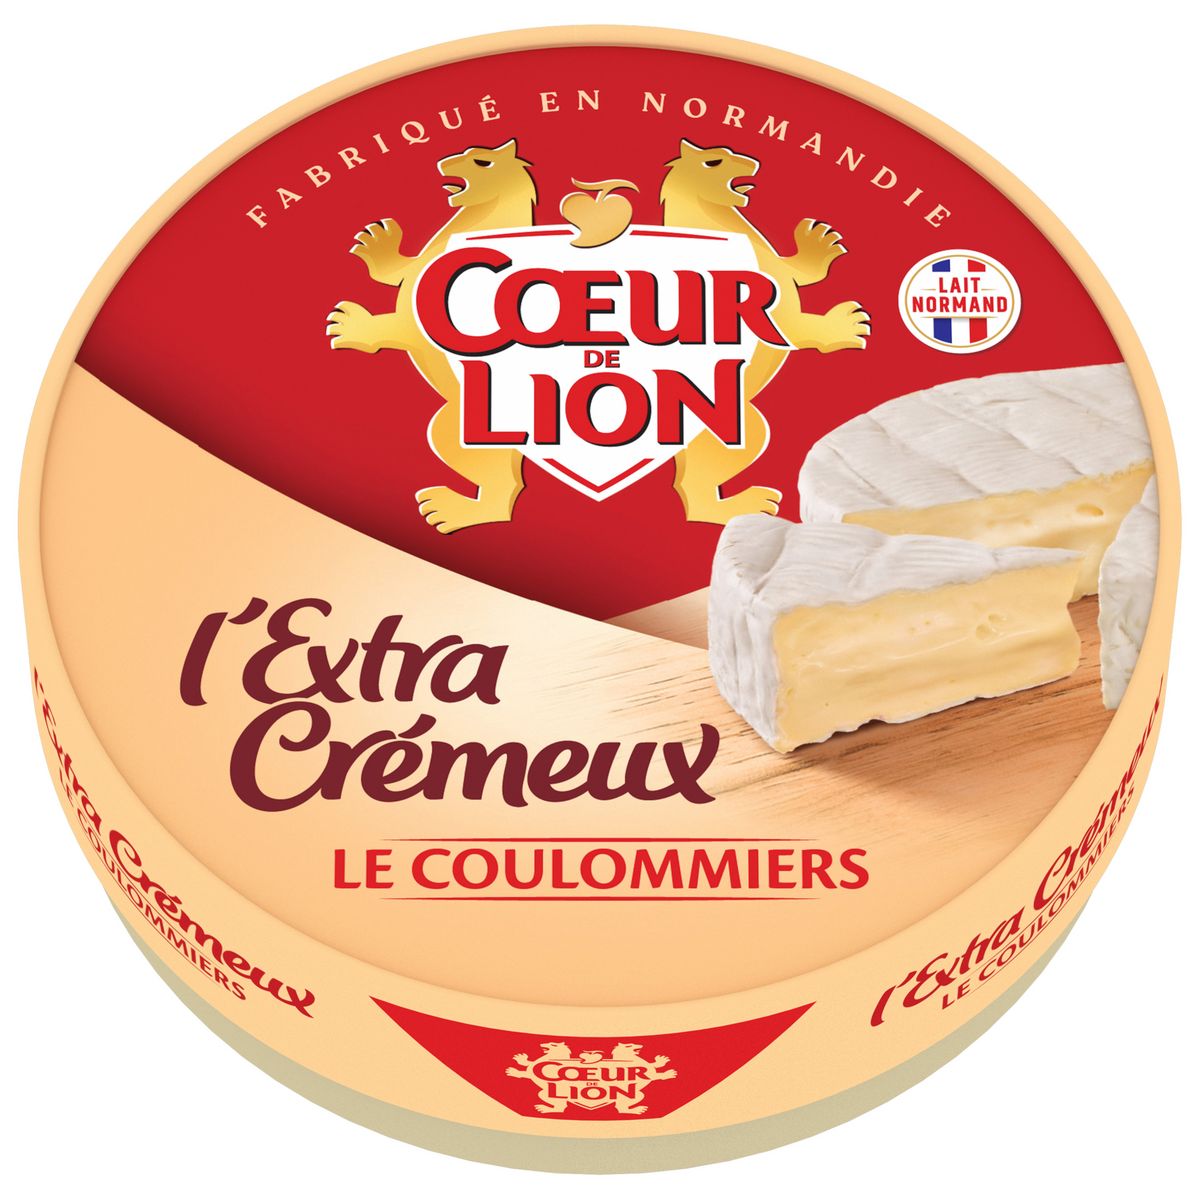 COEUR DE LION Coulommiers extra crémeux 385g